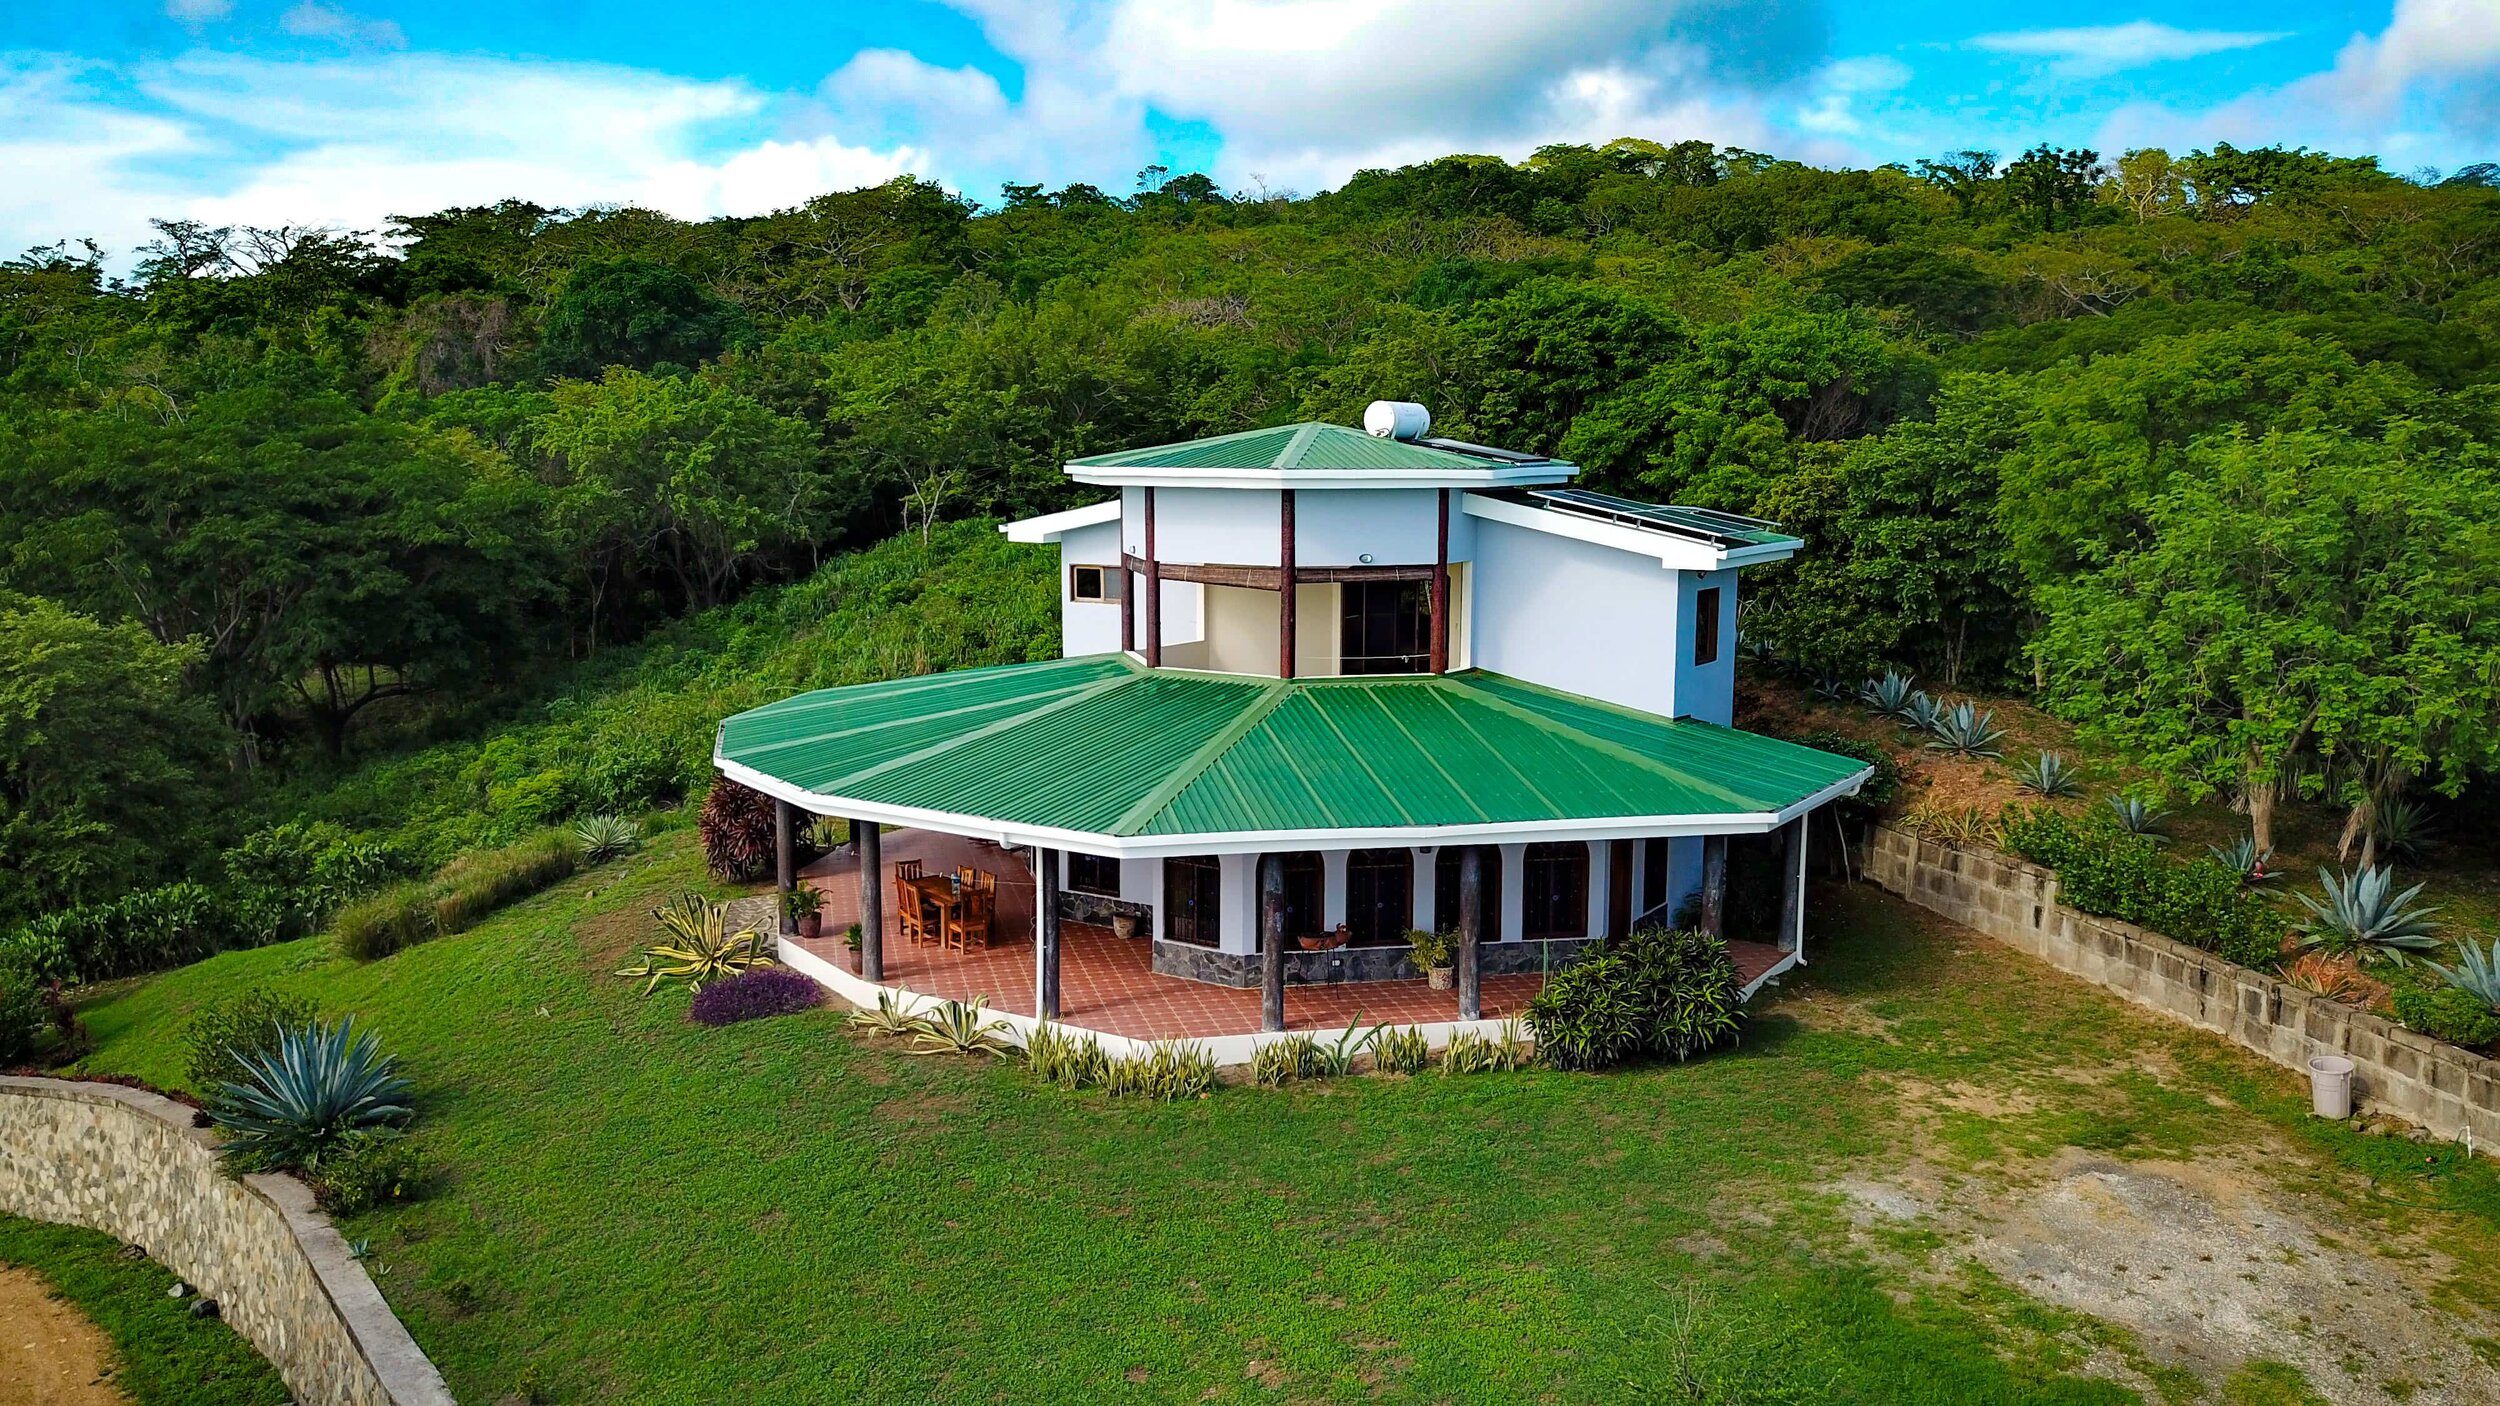 Property for Sale San Juan Del Sur Nicaragua Real Estate 1.JPEG